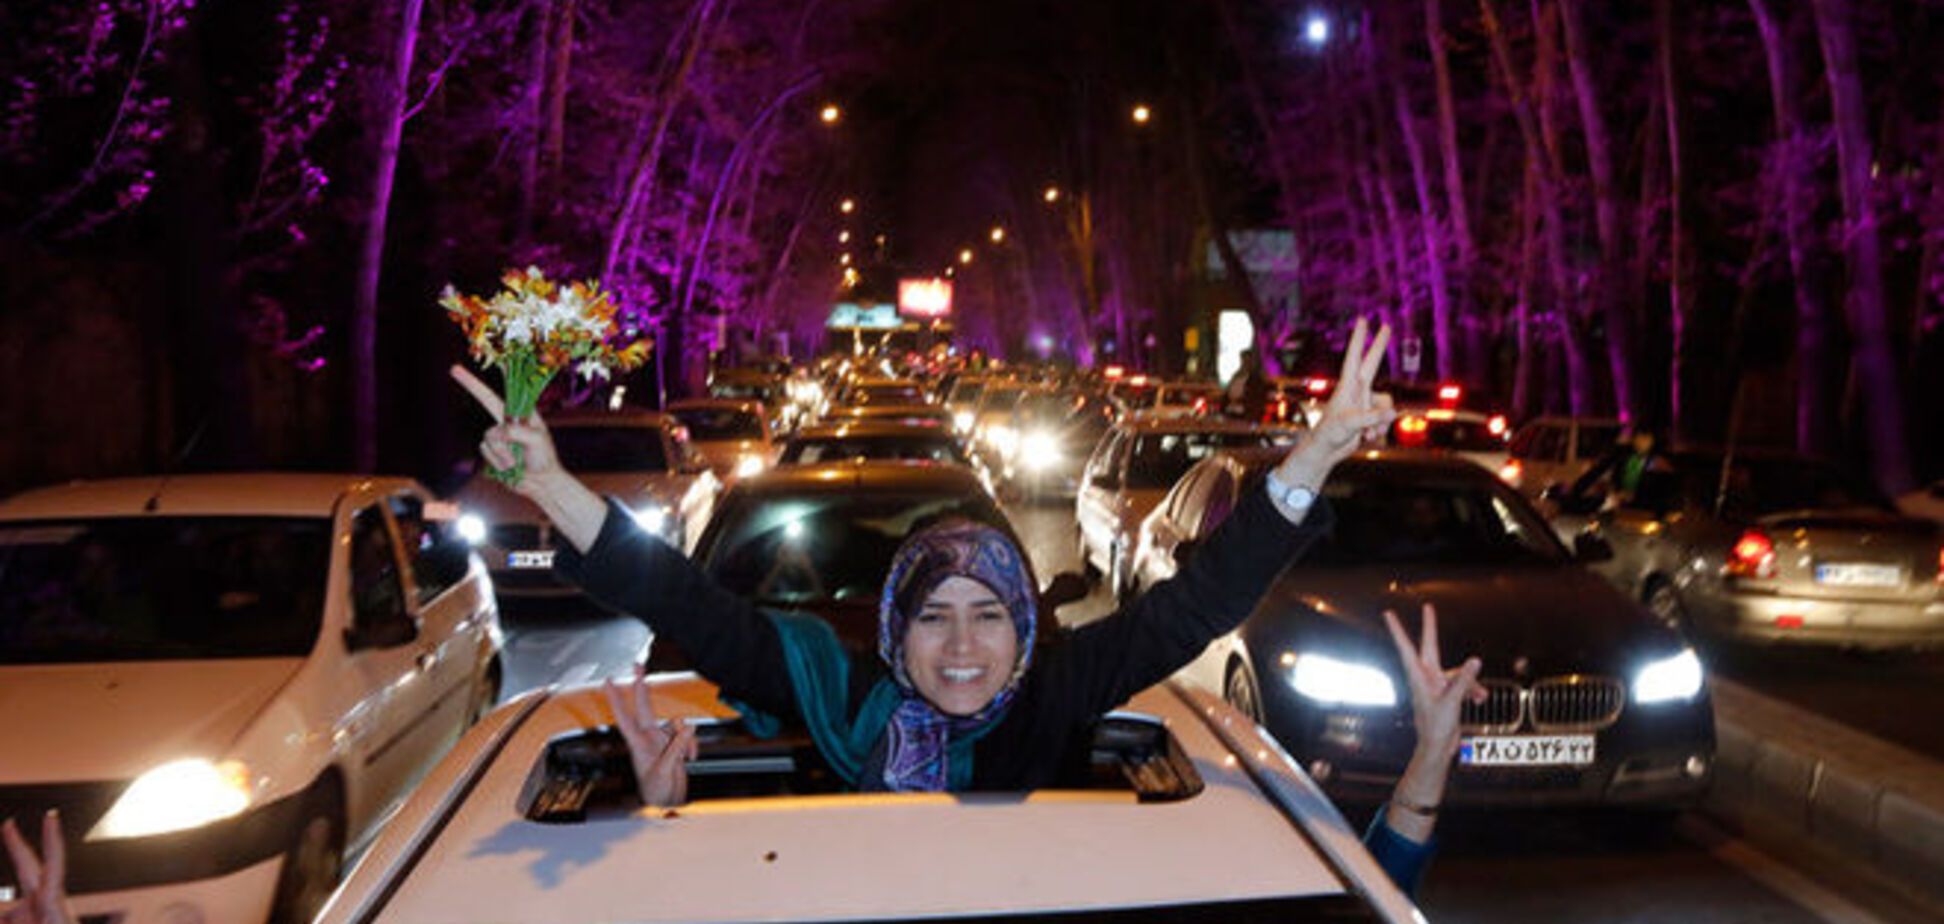 Іранці феєрично відзначили угоду із Заходом: опубліковано фото і відео